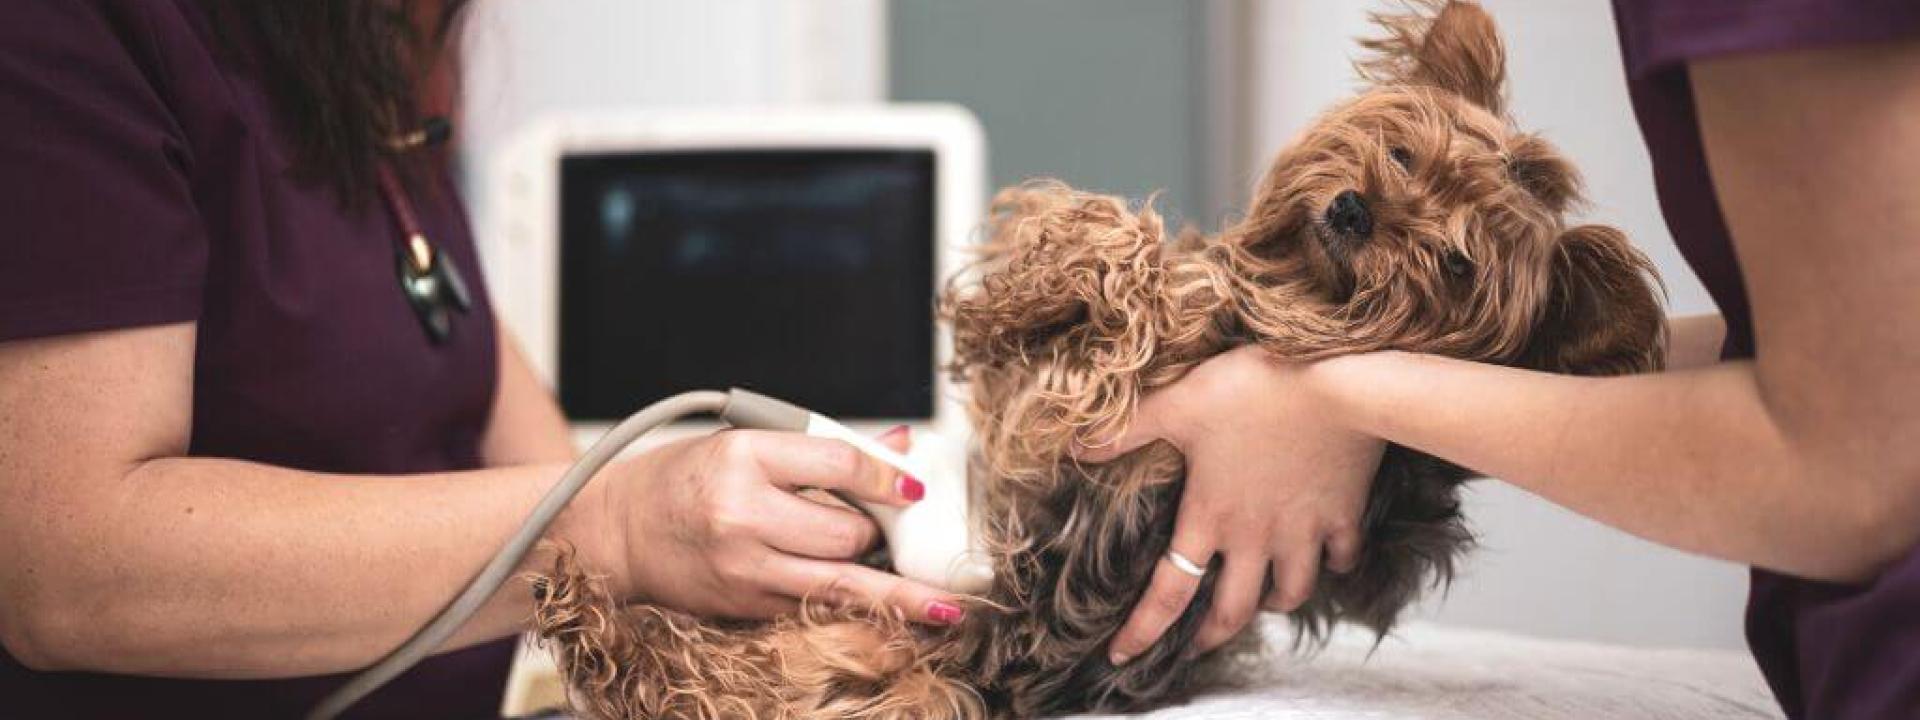 Female dog receiving an ultrasound.